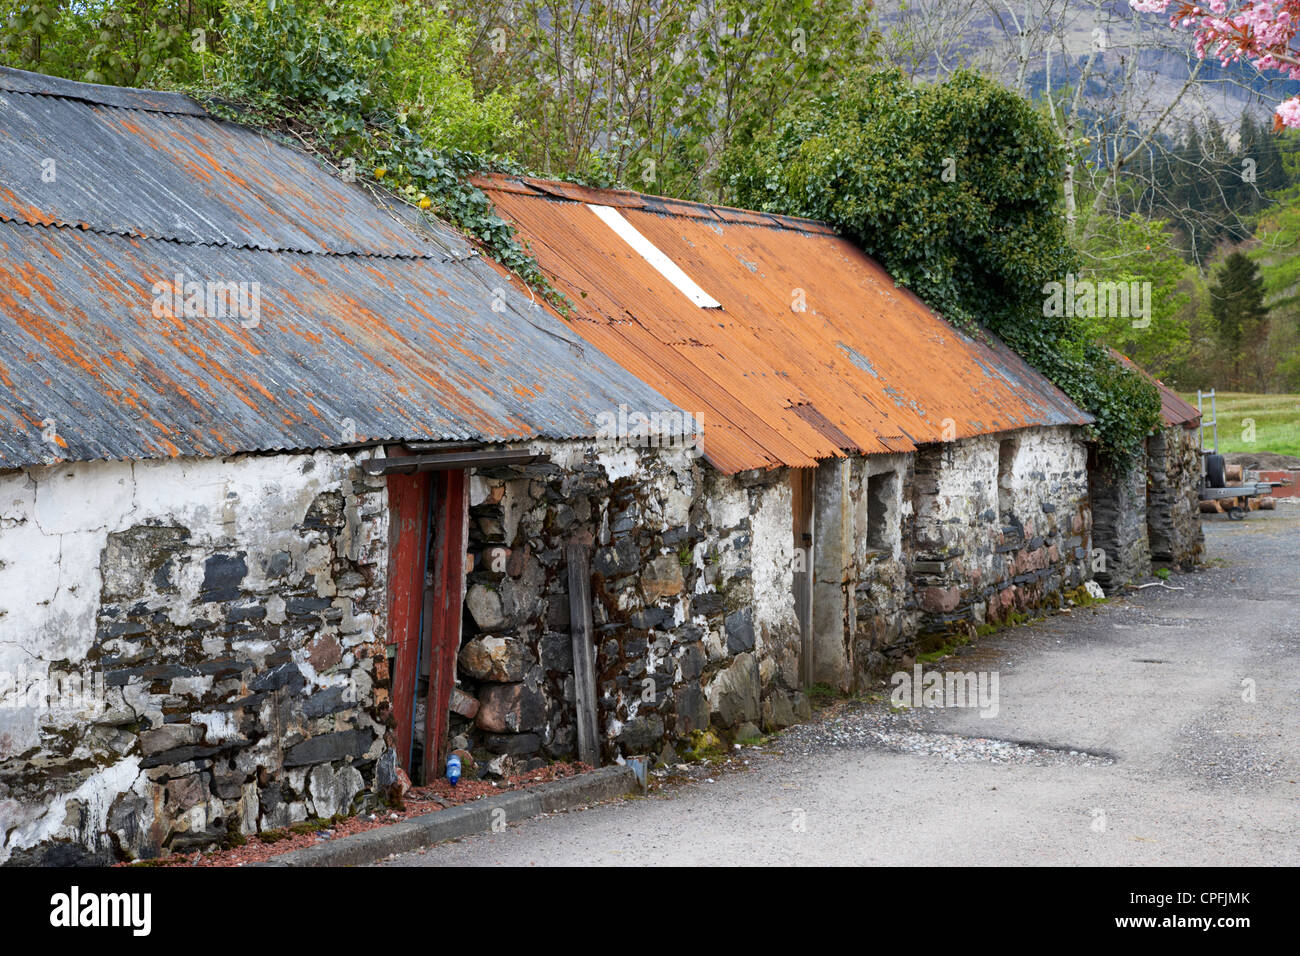 abandoned ruined old corrugated iron scottish cottages in Glencoe highlands scotland uk Stock Photo